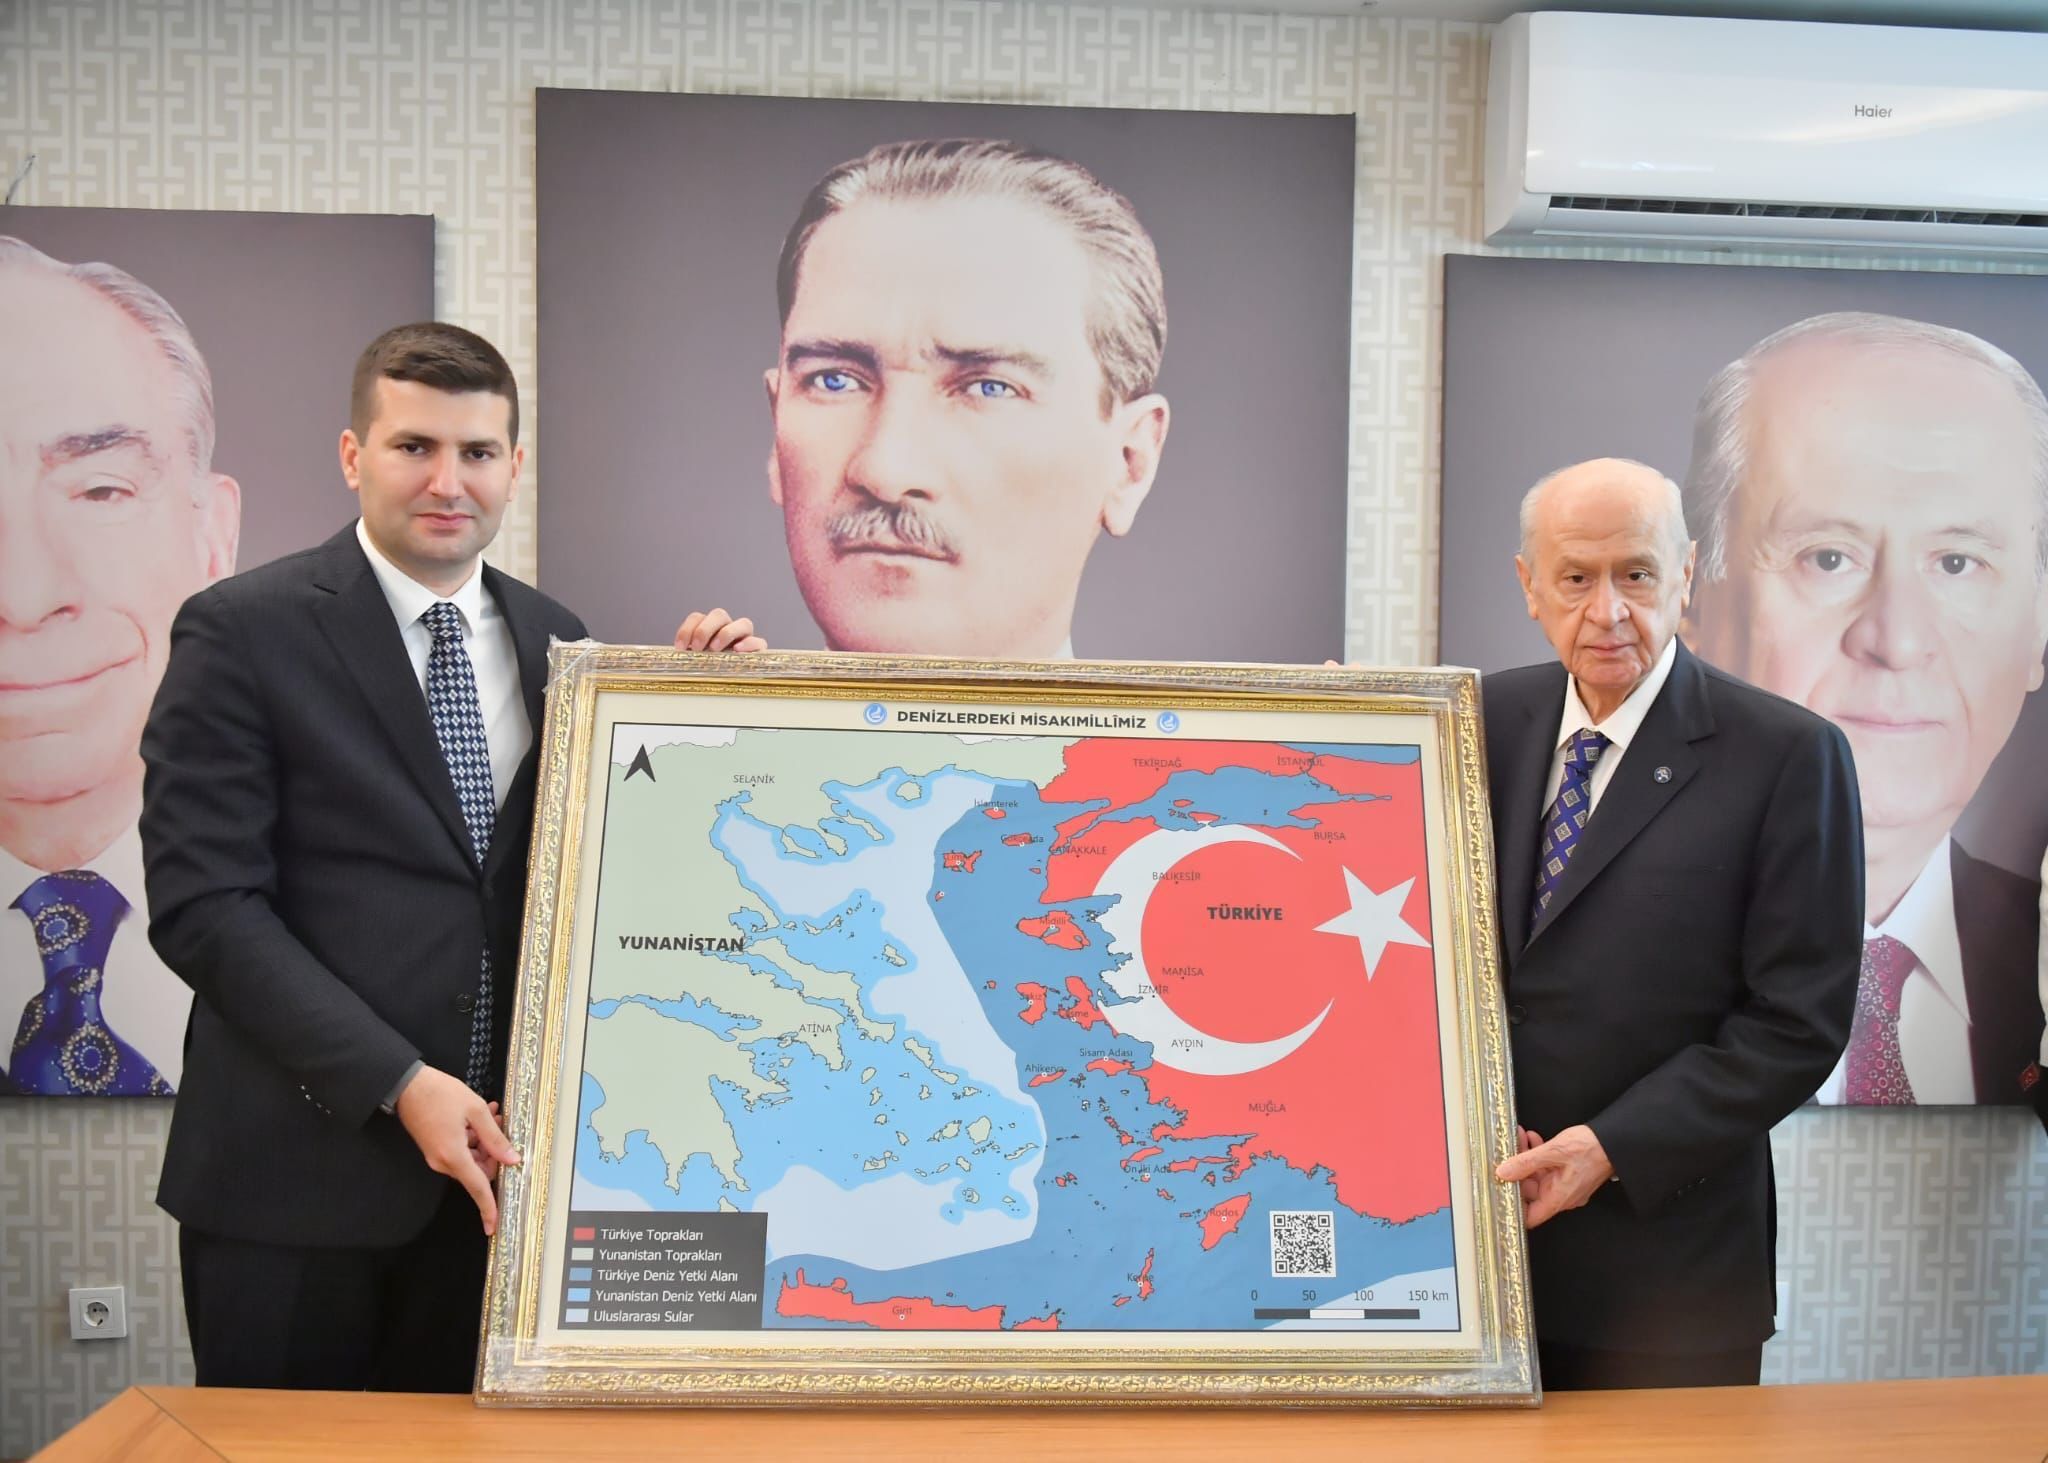 Απάντηση της Αθήνας στον χάρτη – πρόκληση του Μπαχτσελί. Δείχνει Αιγαίο και Κρήτη τουρκικά. “Είναι επιθετική ενέργεια”